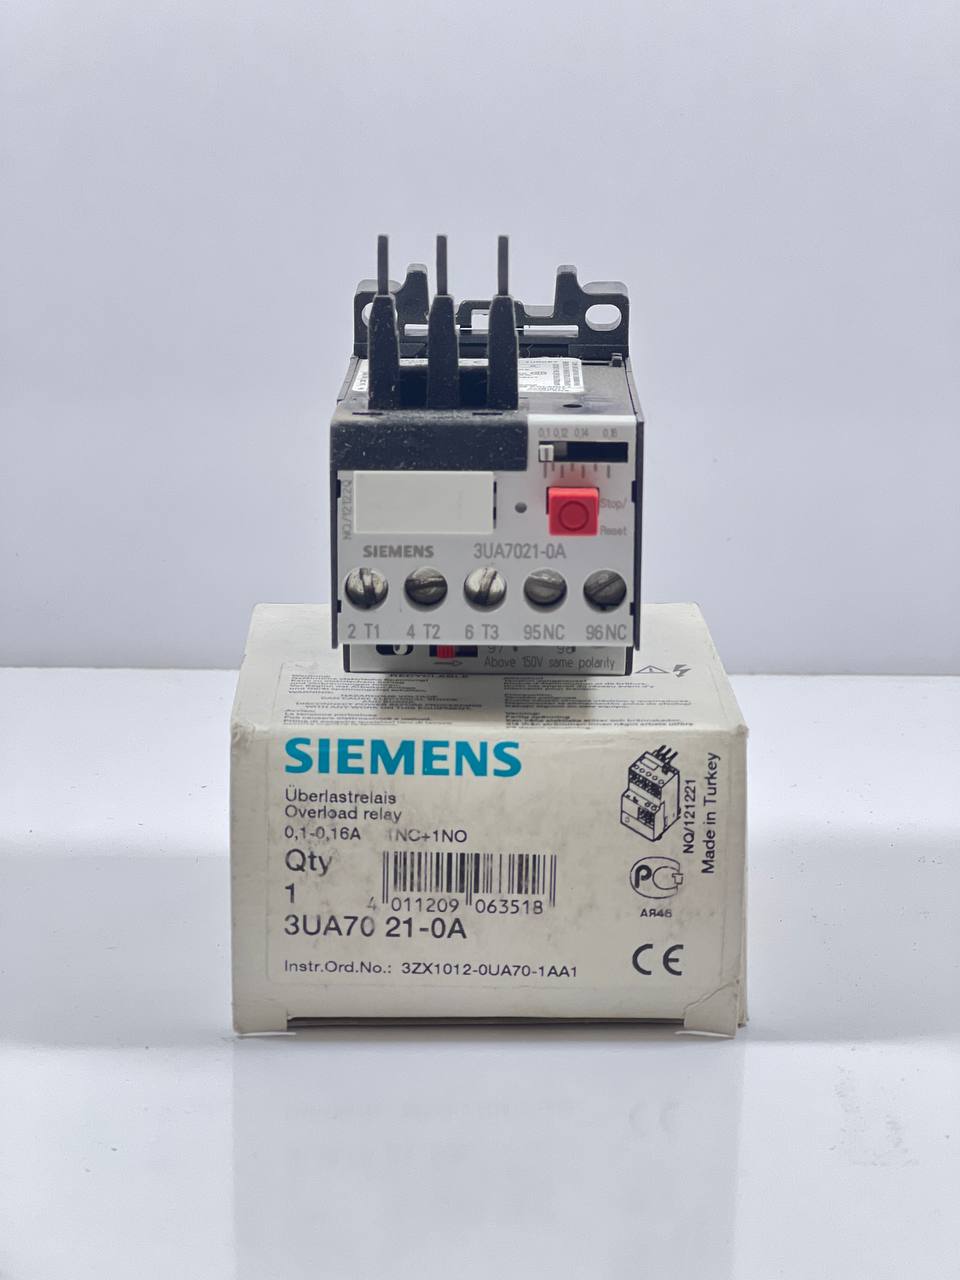 Siemens 3UA7021-0A